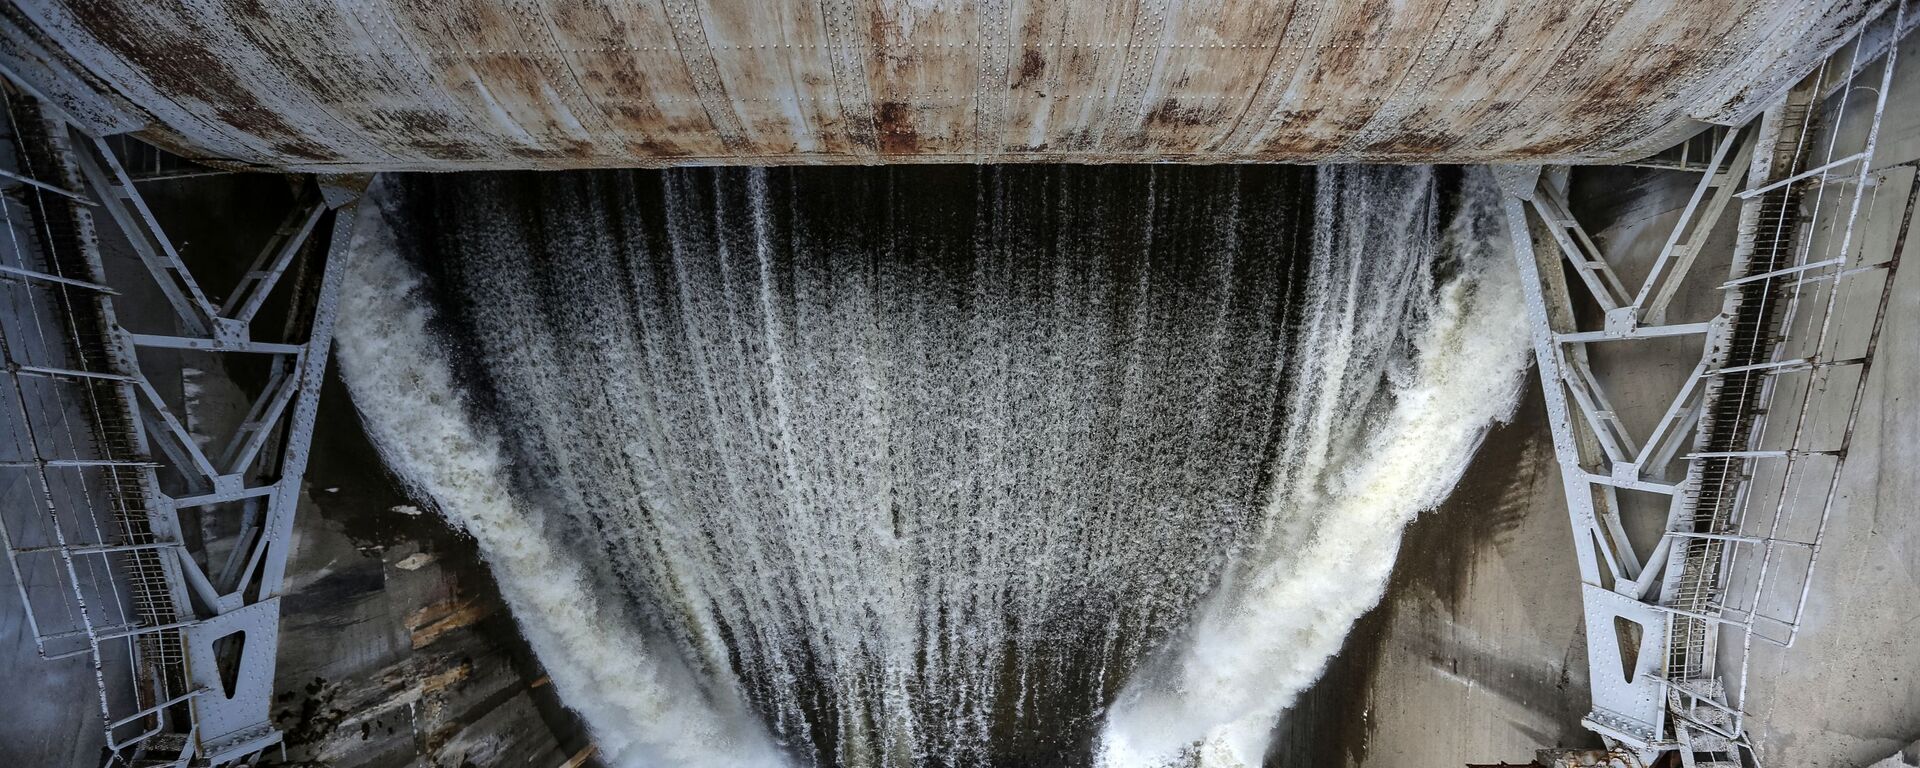 Холостые сбросы воды на водохранилище. Архивное фото - Sputnik Кыргызстан, 1920, 02.12.2021